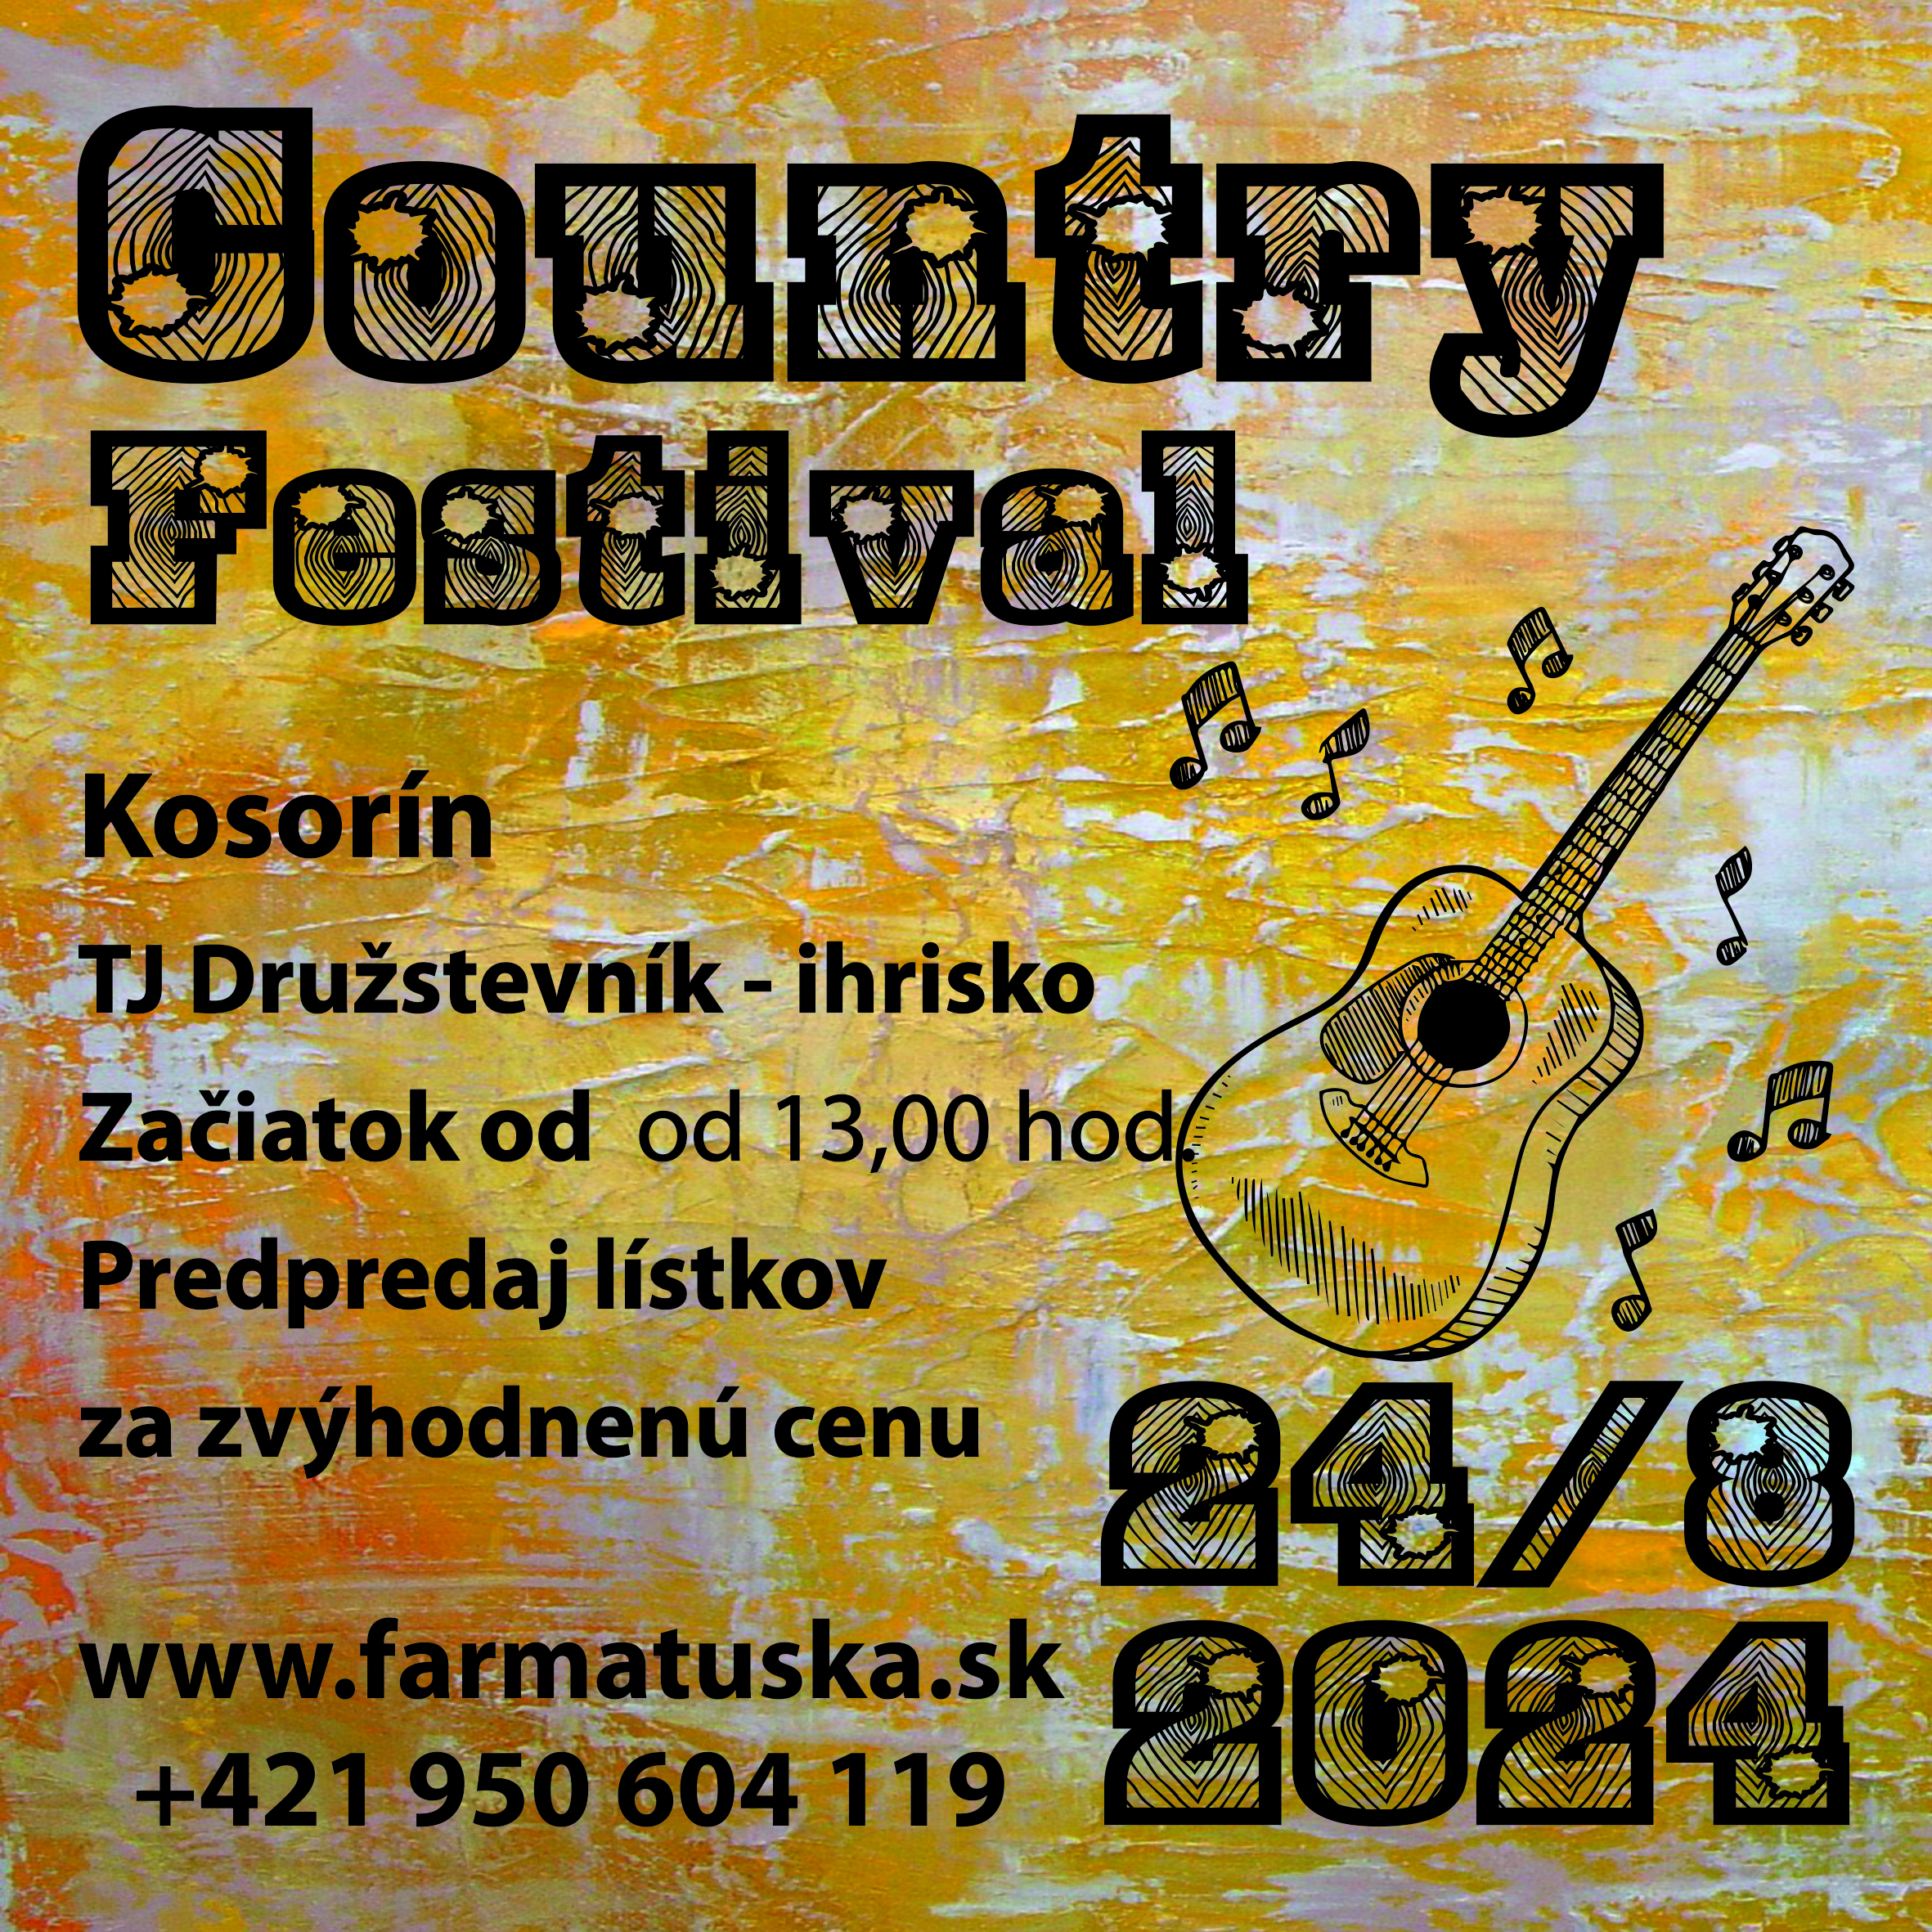 Country festival v Kosoríne